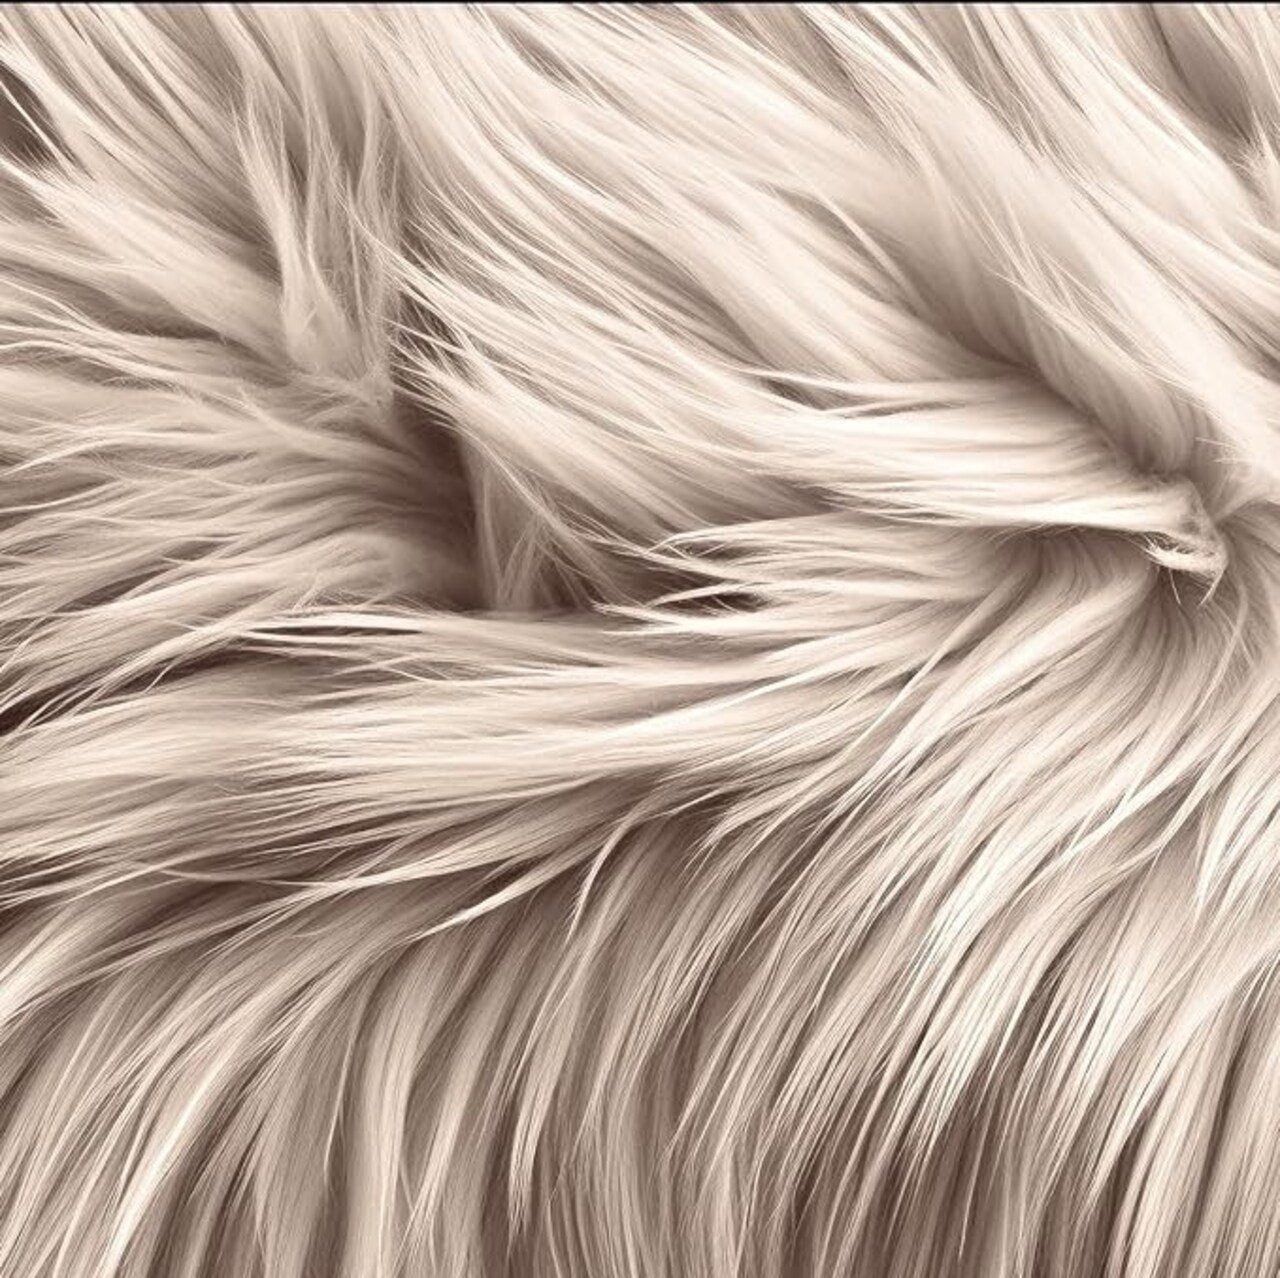 Faux Fur Fabric | Round Circular Fluffy Shaggy Faux Fur Fabric | Use ...